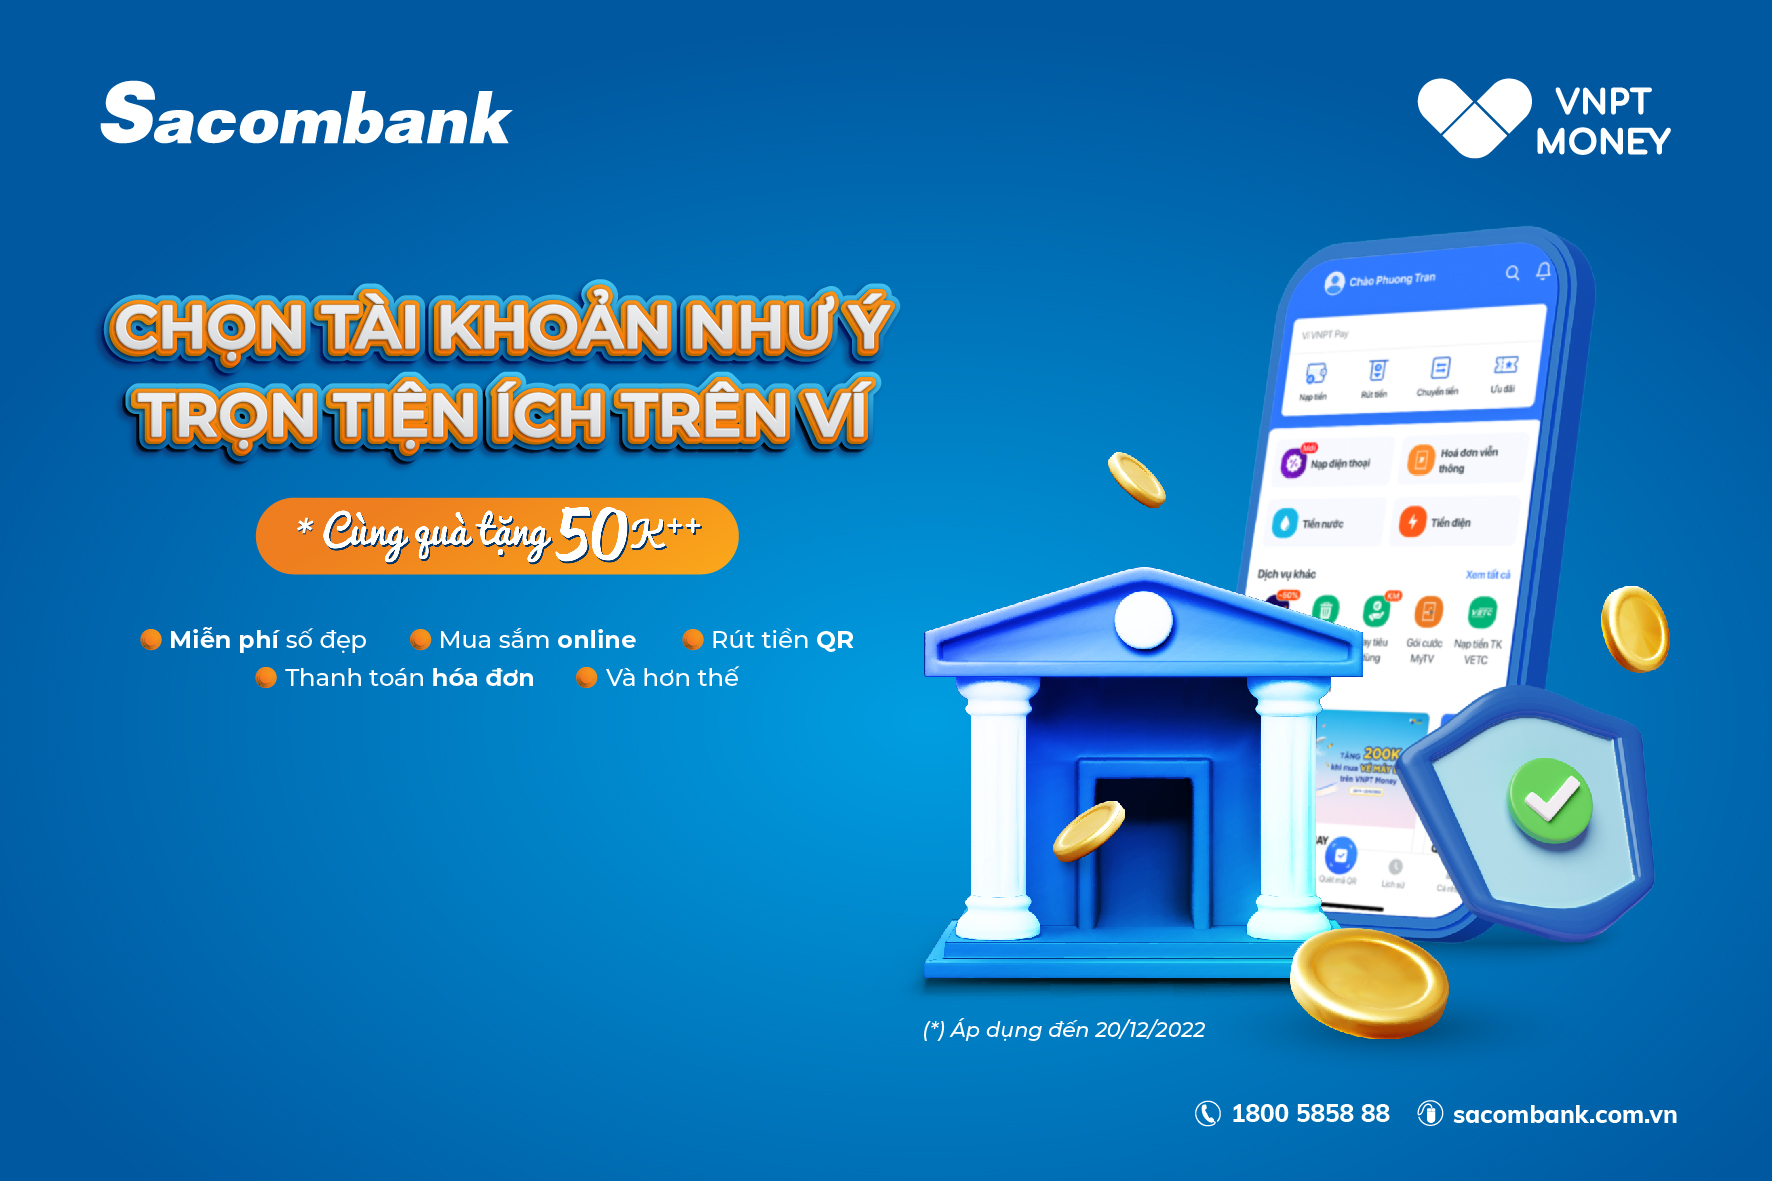 Mở tài khoản Sacombank trên ứng dụng VNPT Money chọn tài khoản như ý – trọn tiện ích trên ví